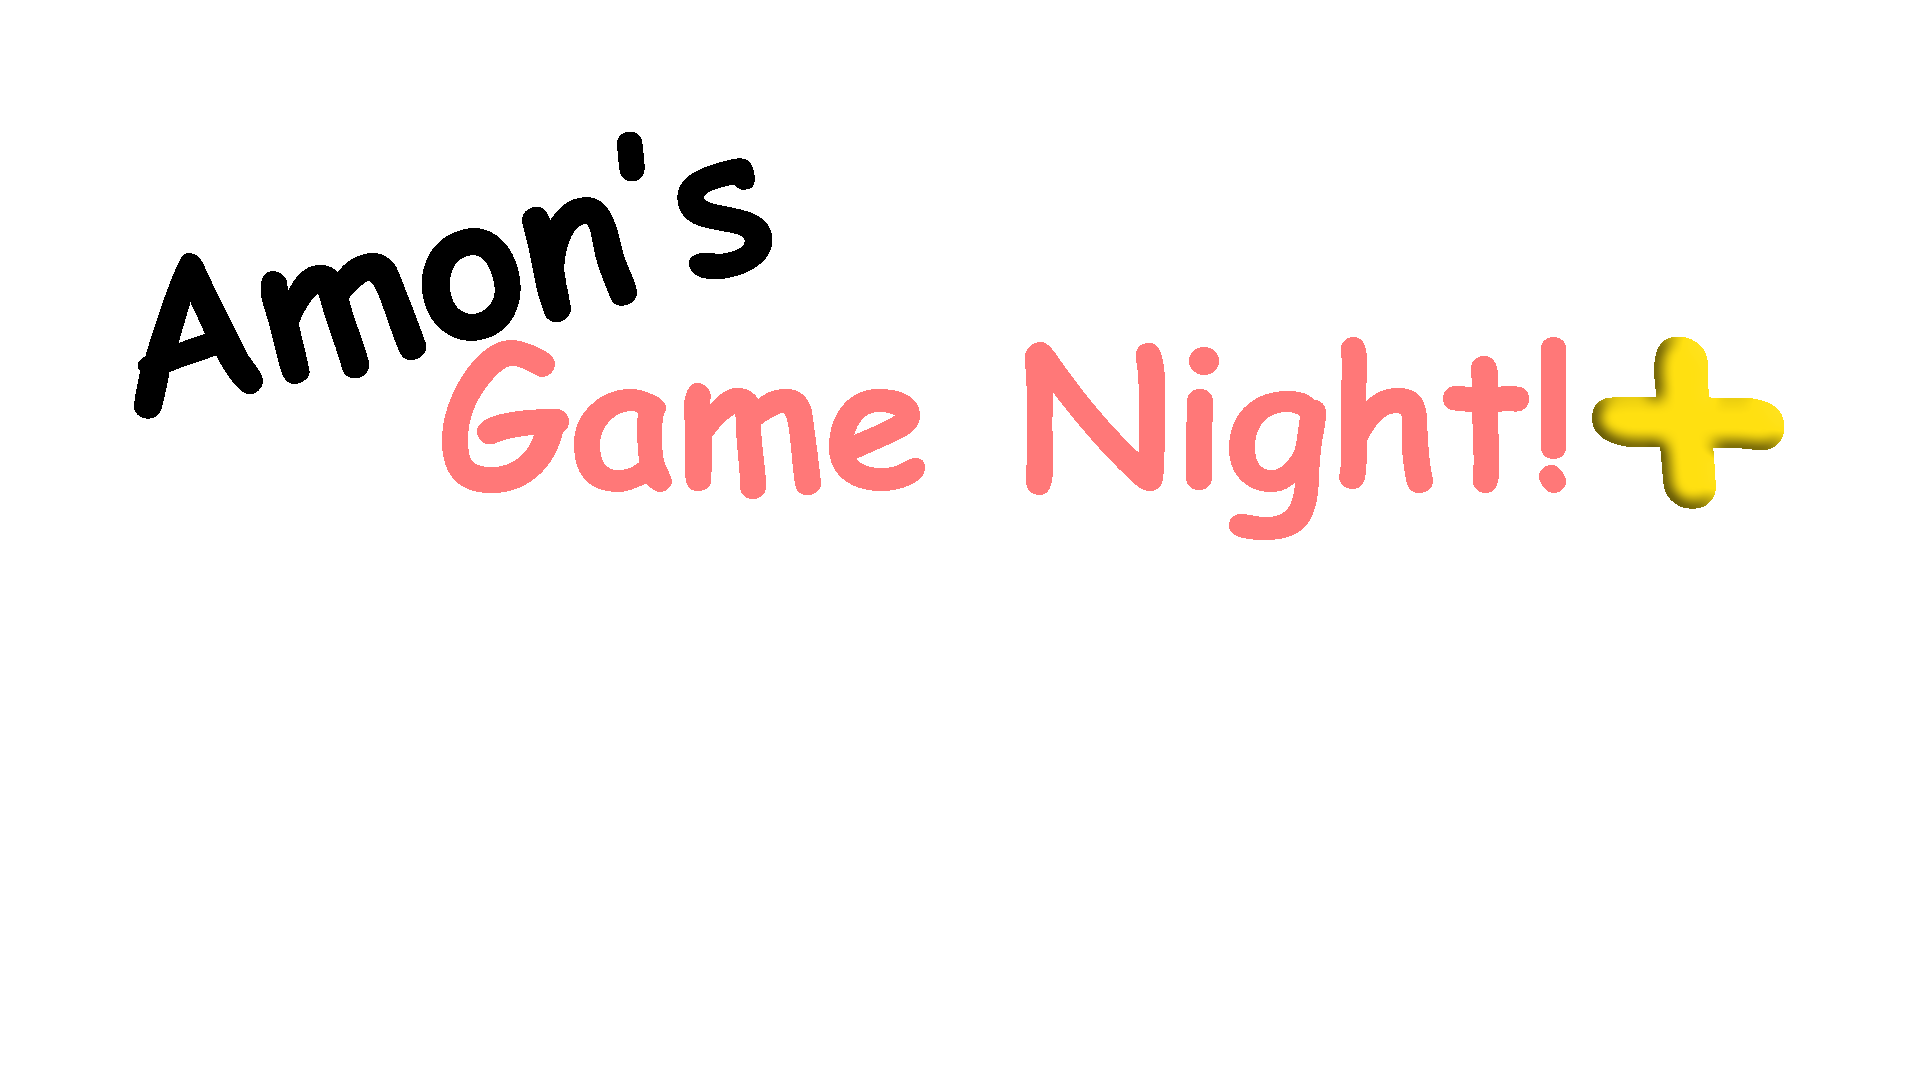 Amon's Game Night! +